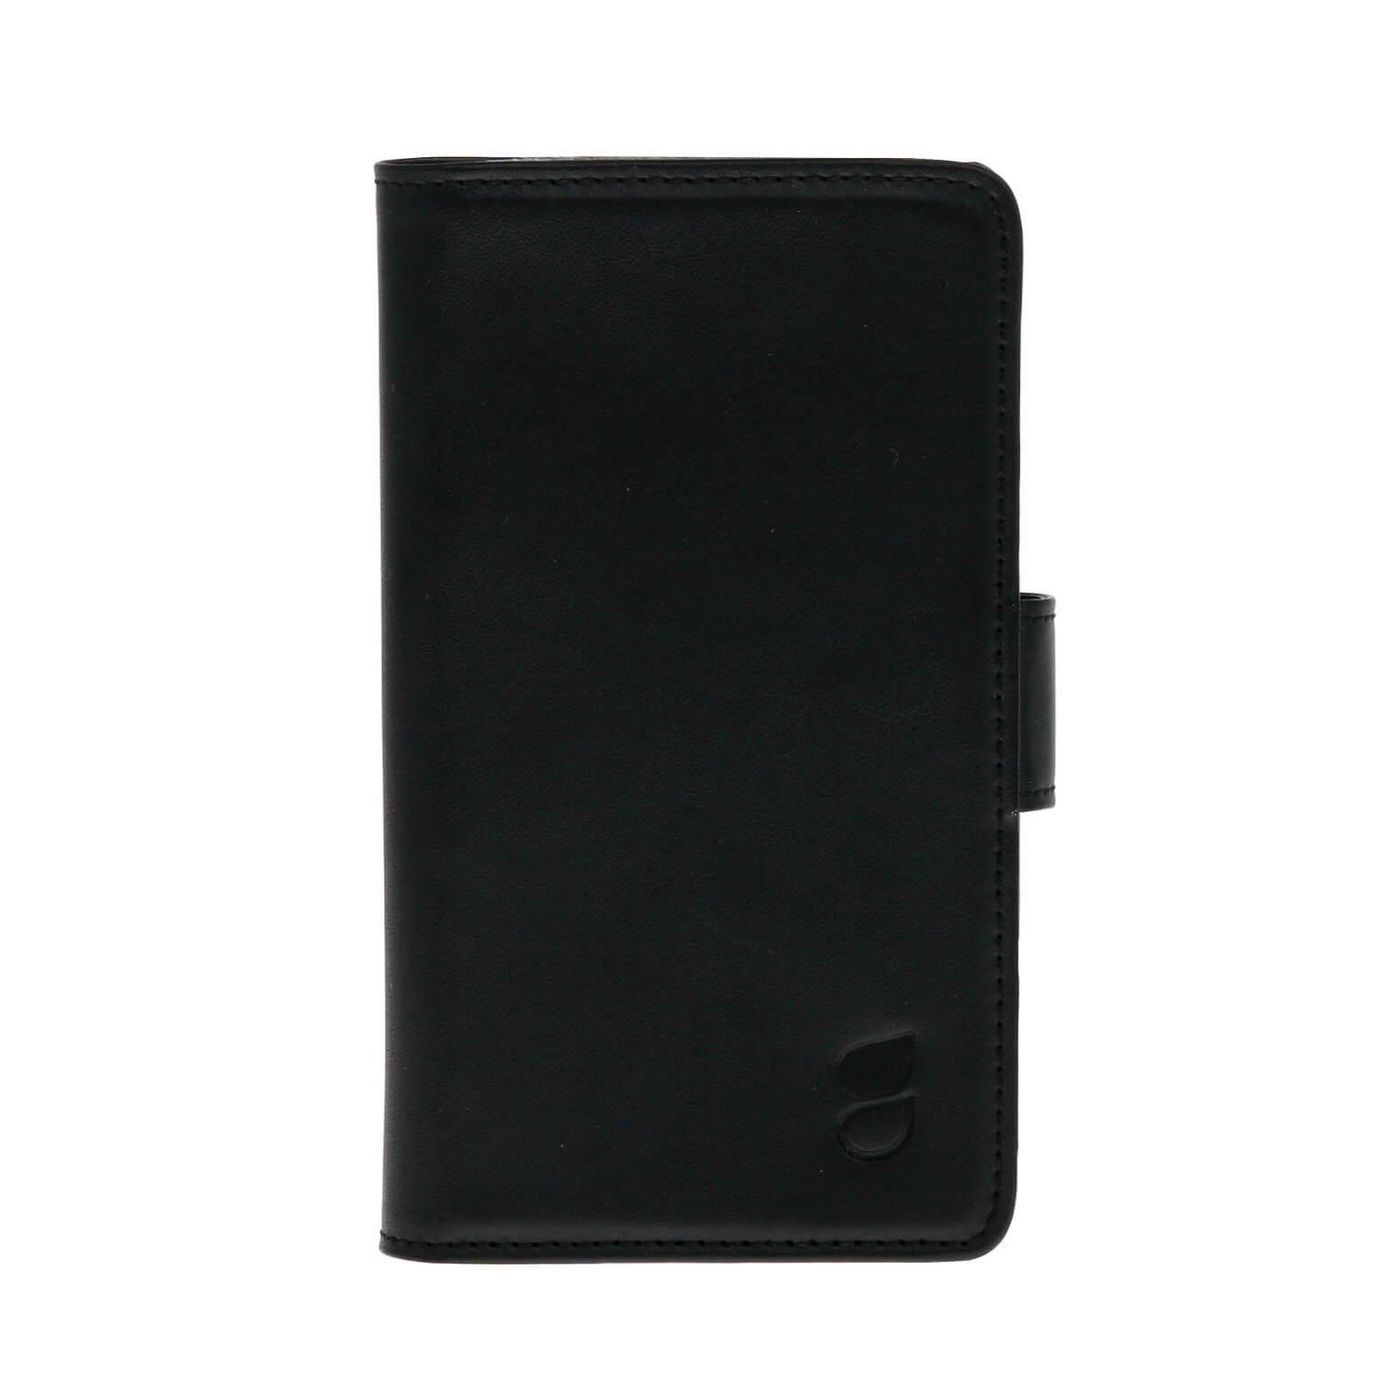 Gear 658807 Xperia Z5 Wallet blk Leth. f 